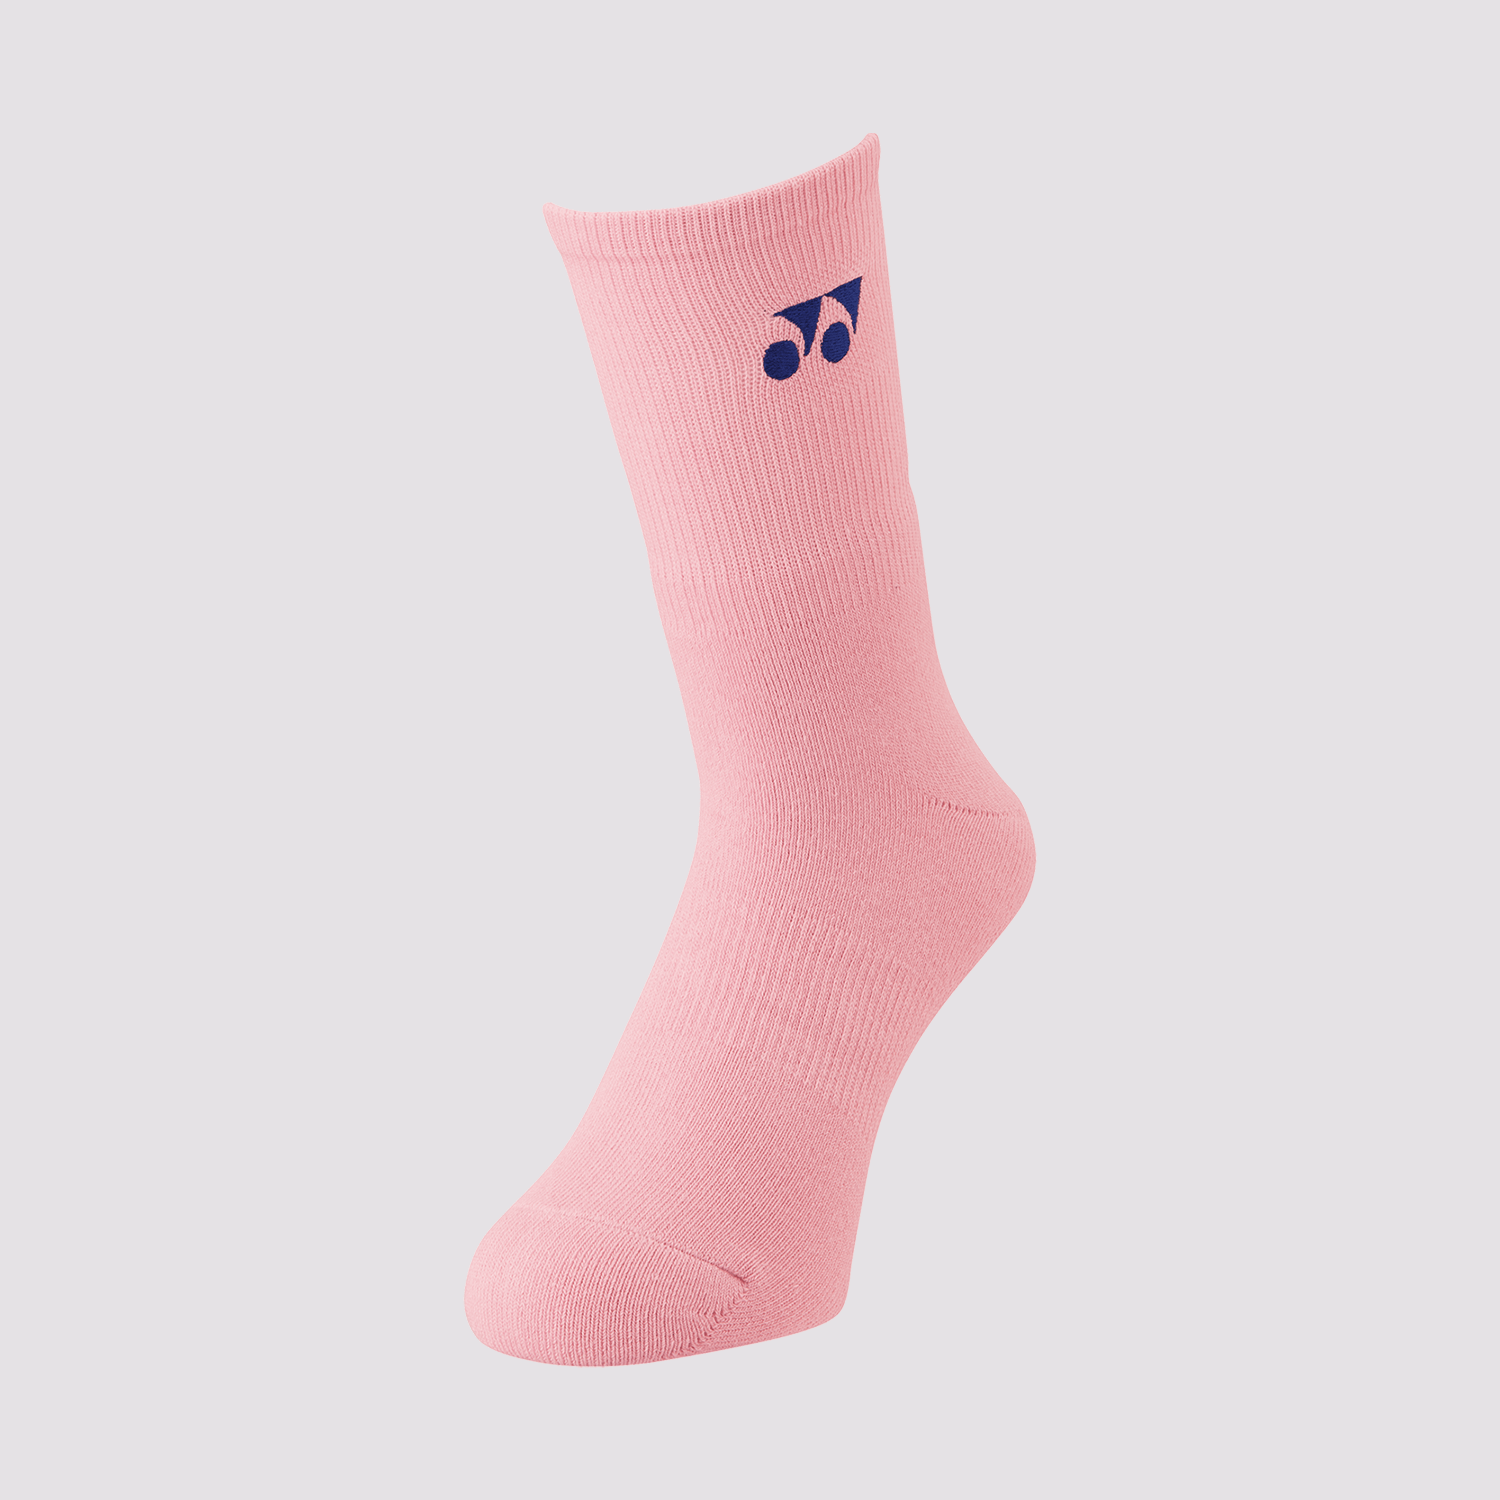 Yonex Men's Sports Socks 19120 (French Pink)